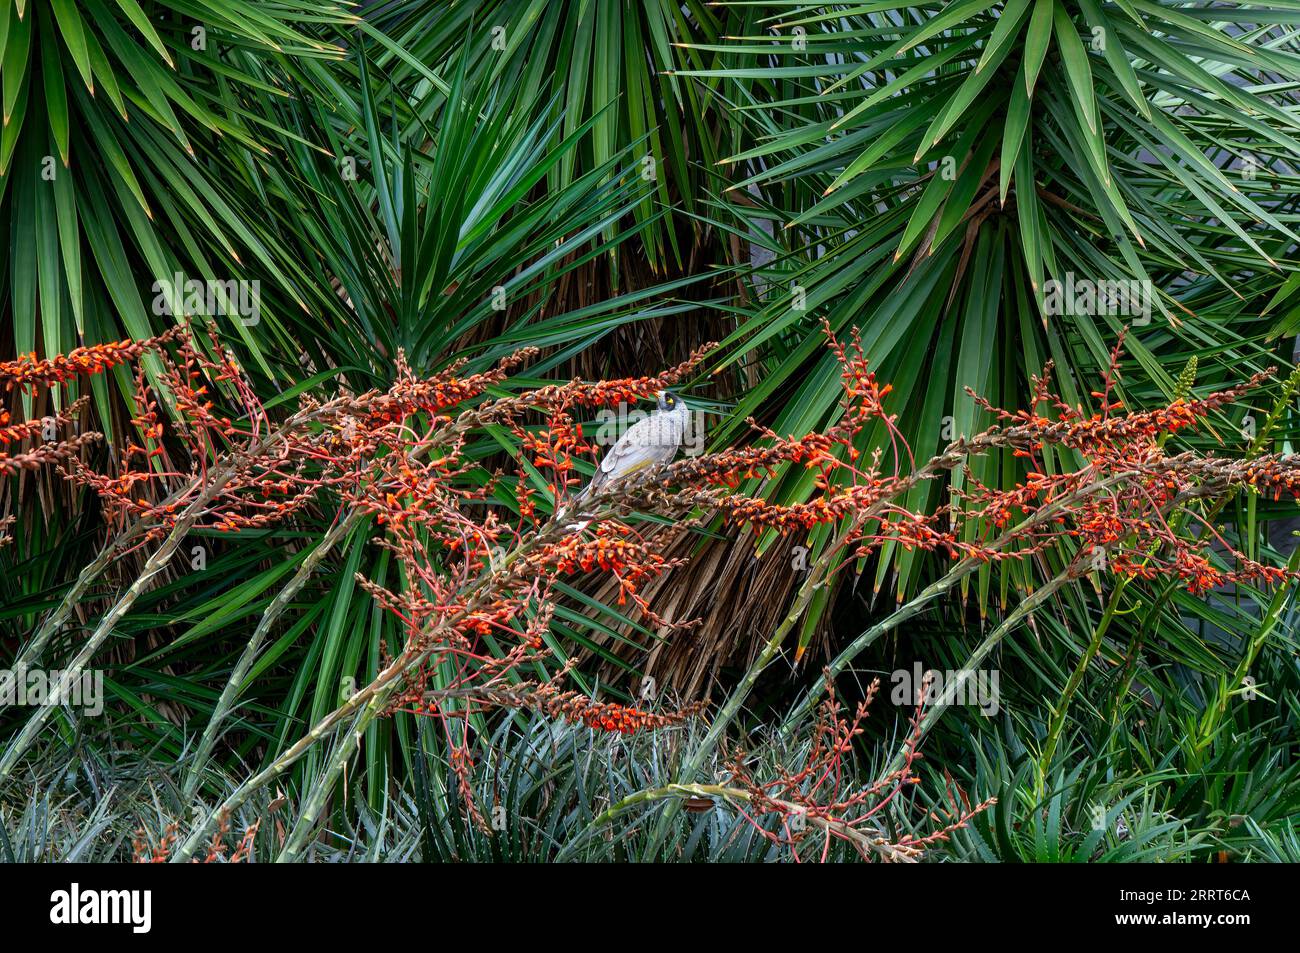 Sydney Australia, rumoroso minatore che dà da mangiare agli uccelli della dyckia encholirioides fiorita in giardino Foto Stock